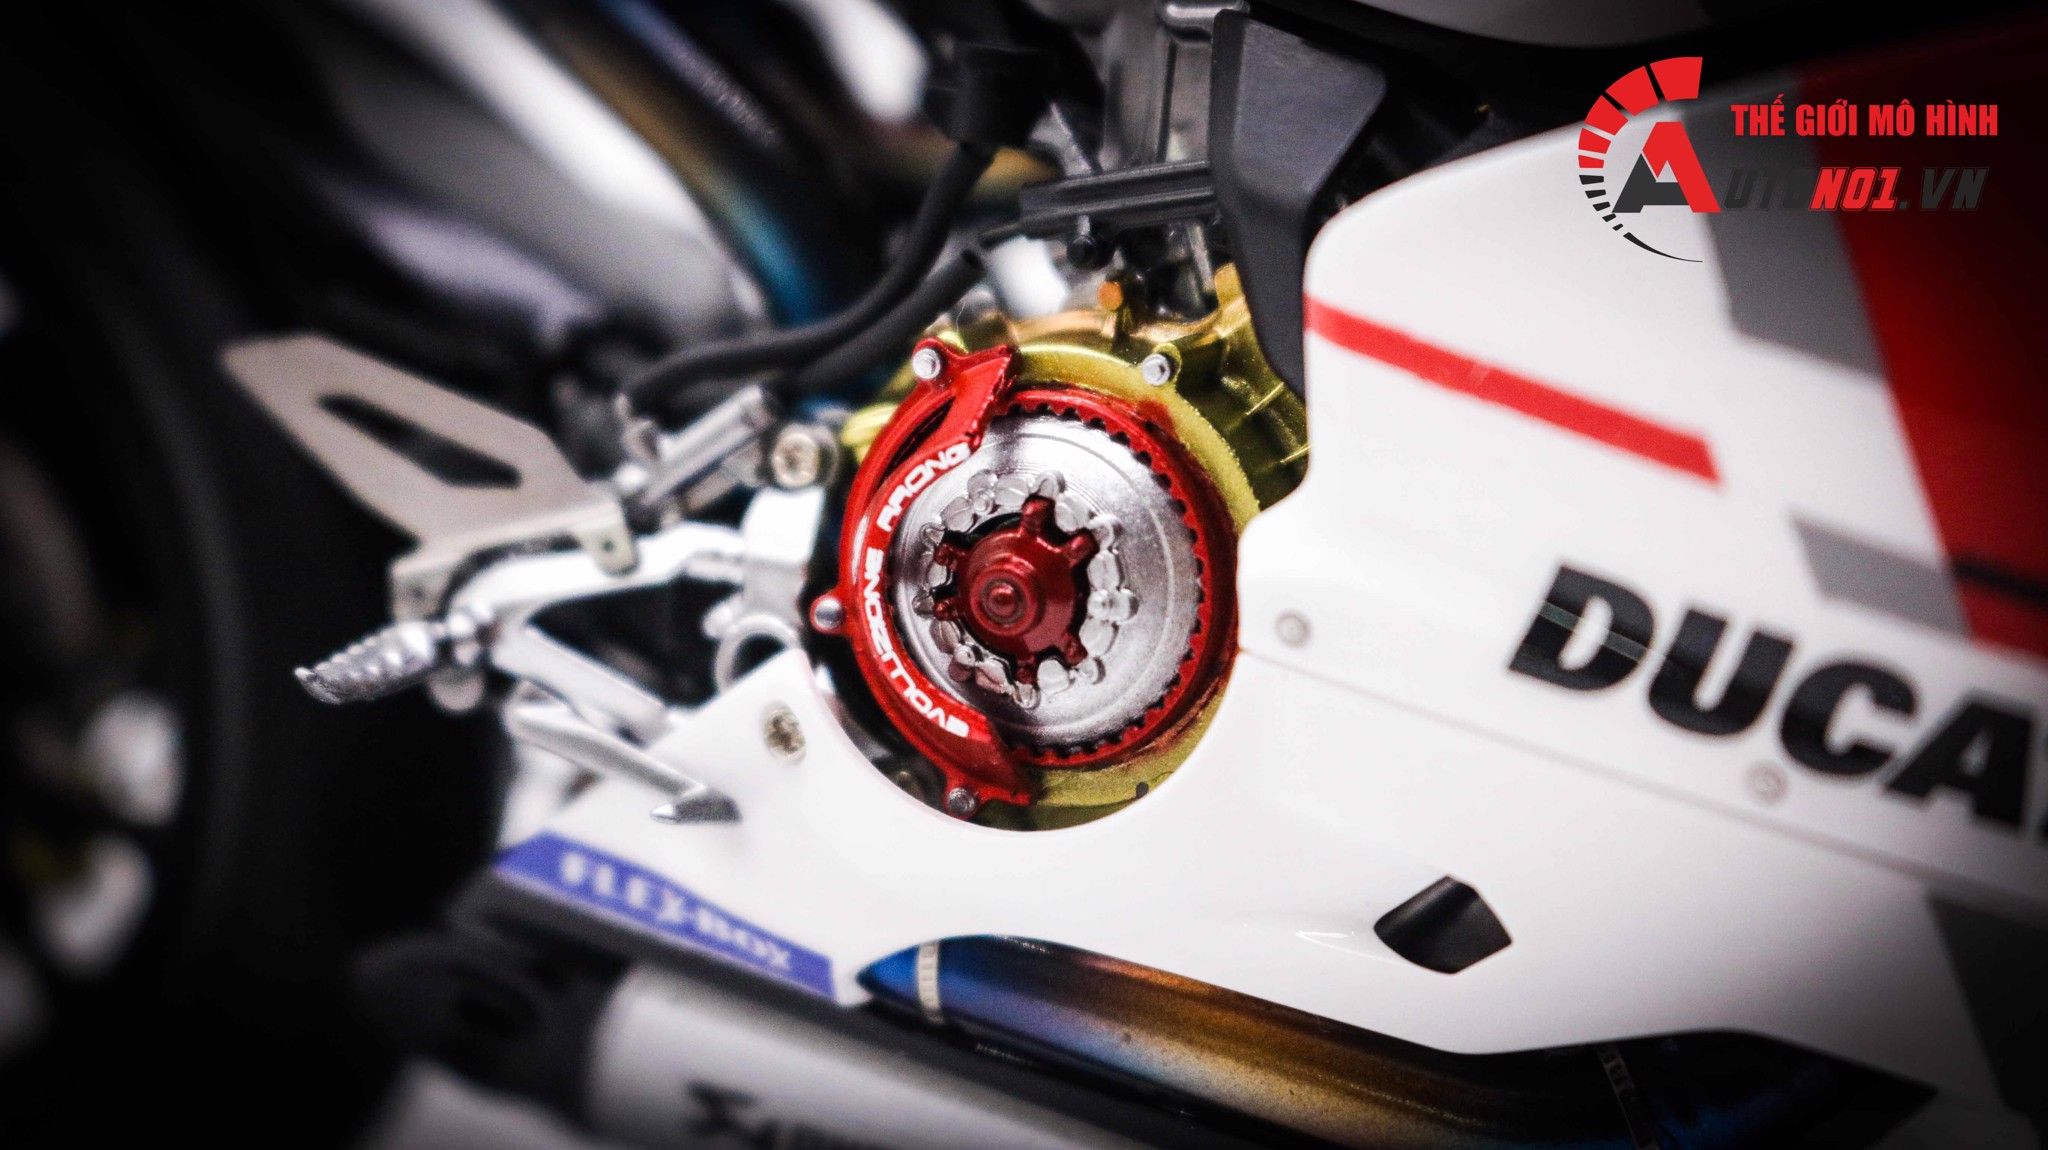  Mô hình xe cao cấp Ducati 1199 Corse Full Up Detail Tỉ Lệ 1:12 Tamiya D125 